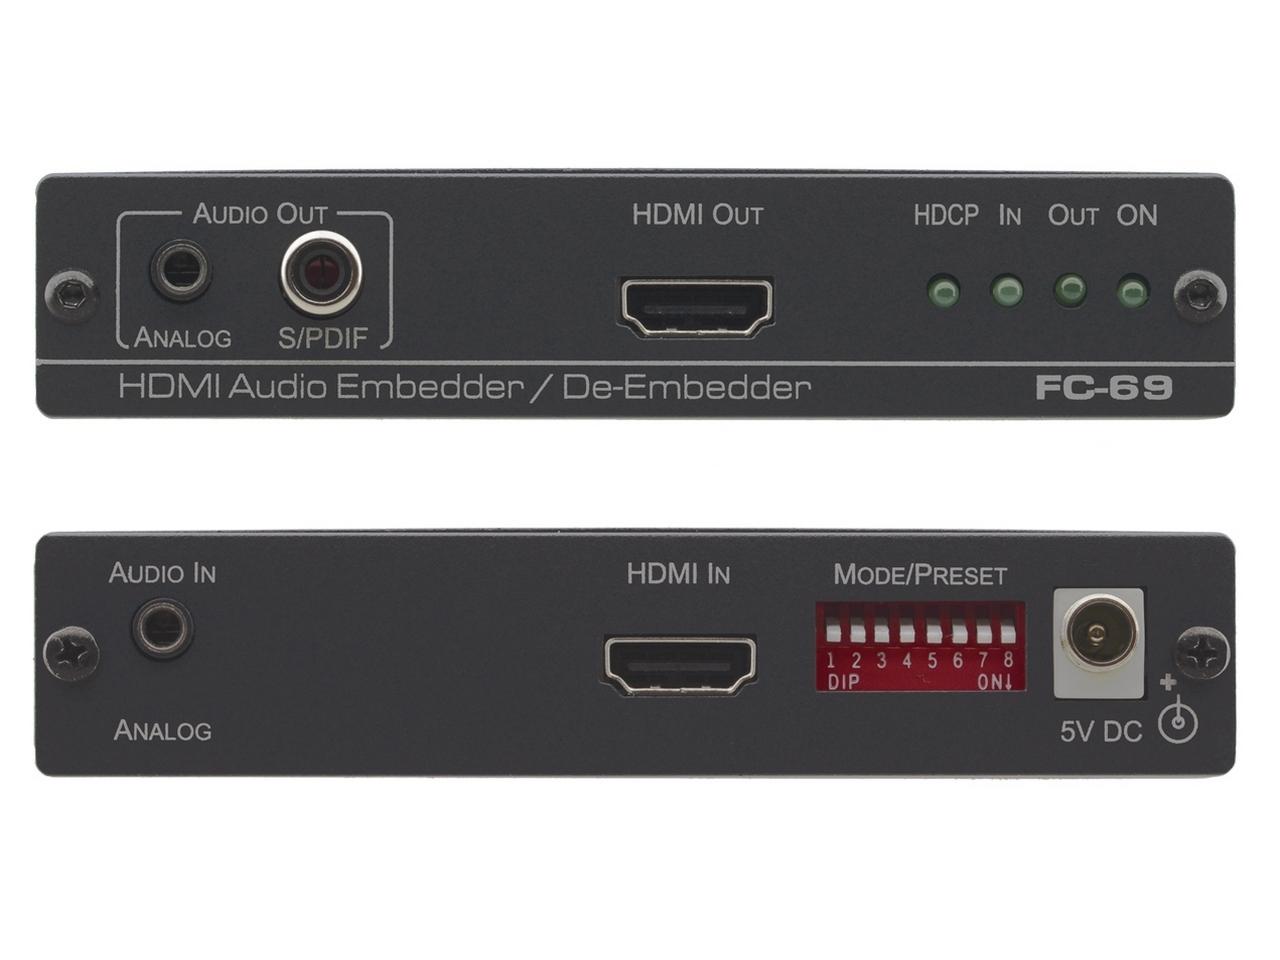 FC-69 HDMI Audio Embedder/De-Embedder by Kramer